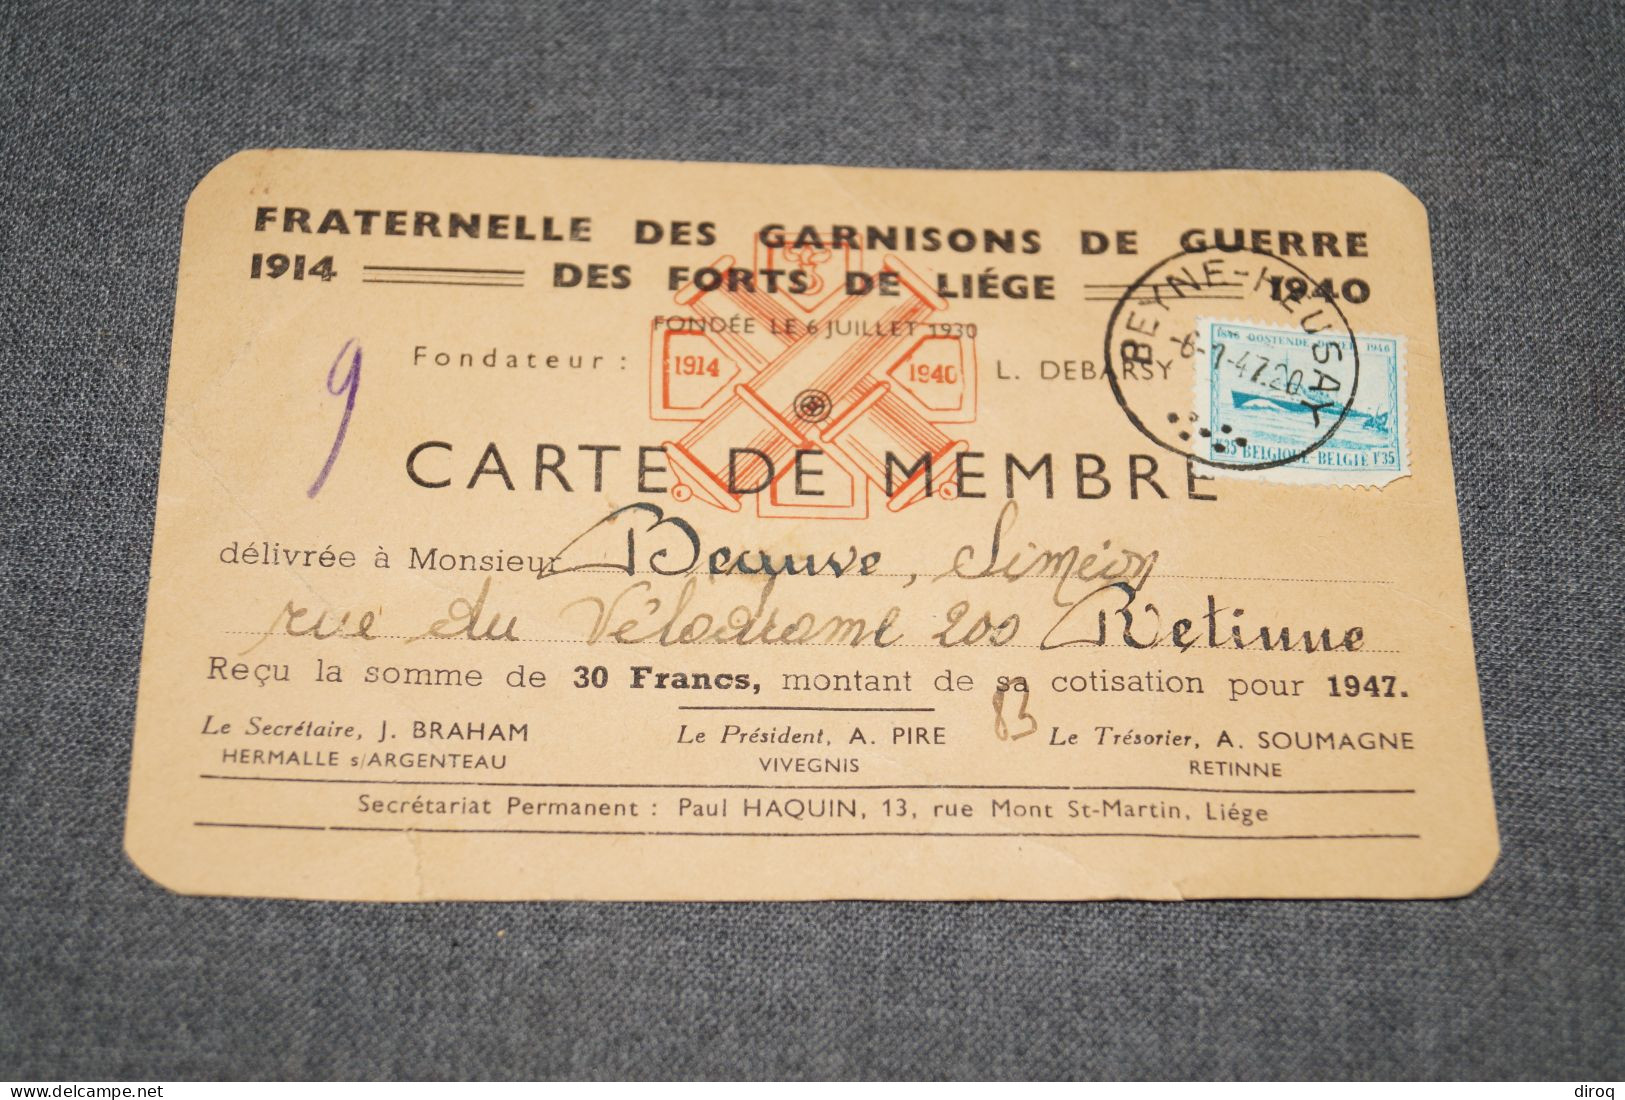 Carte De La Fraternel Du Fort De Liège,1914-1940,Mr. Beauve De Rétinne,14 Cm. Sur 9 Cm. - Dokumente